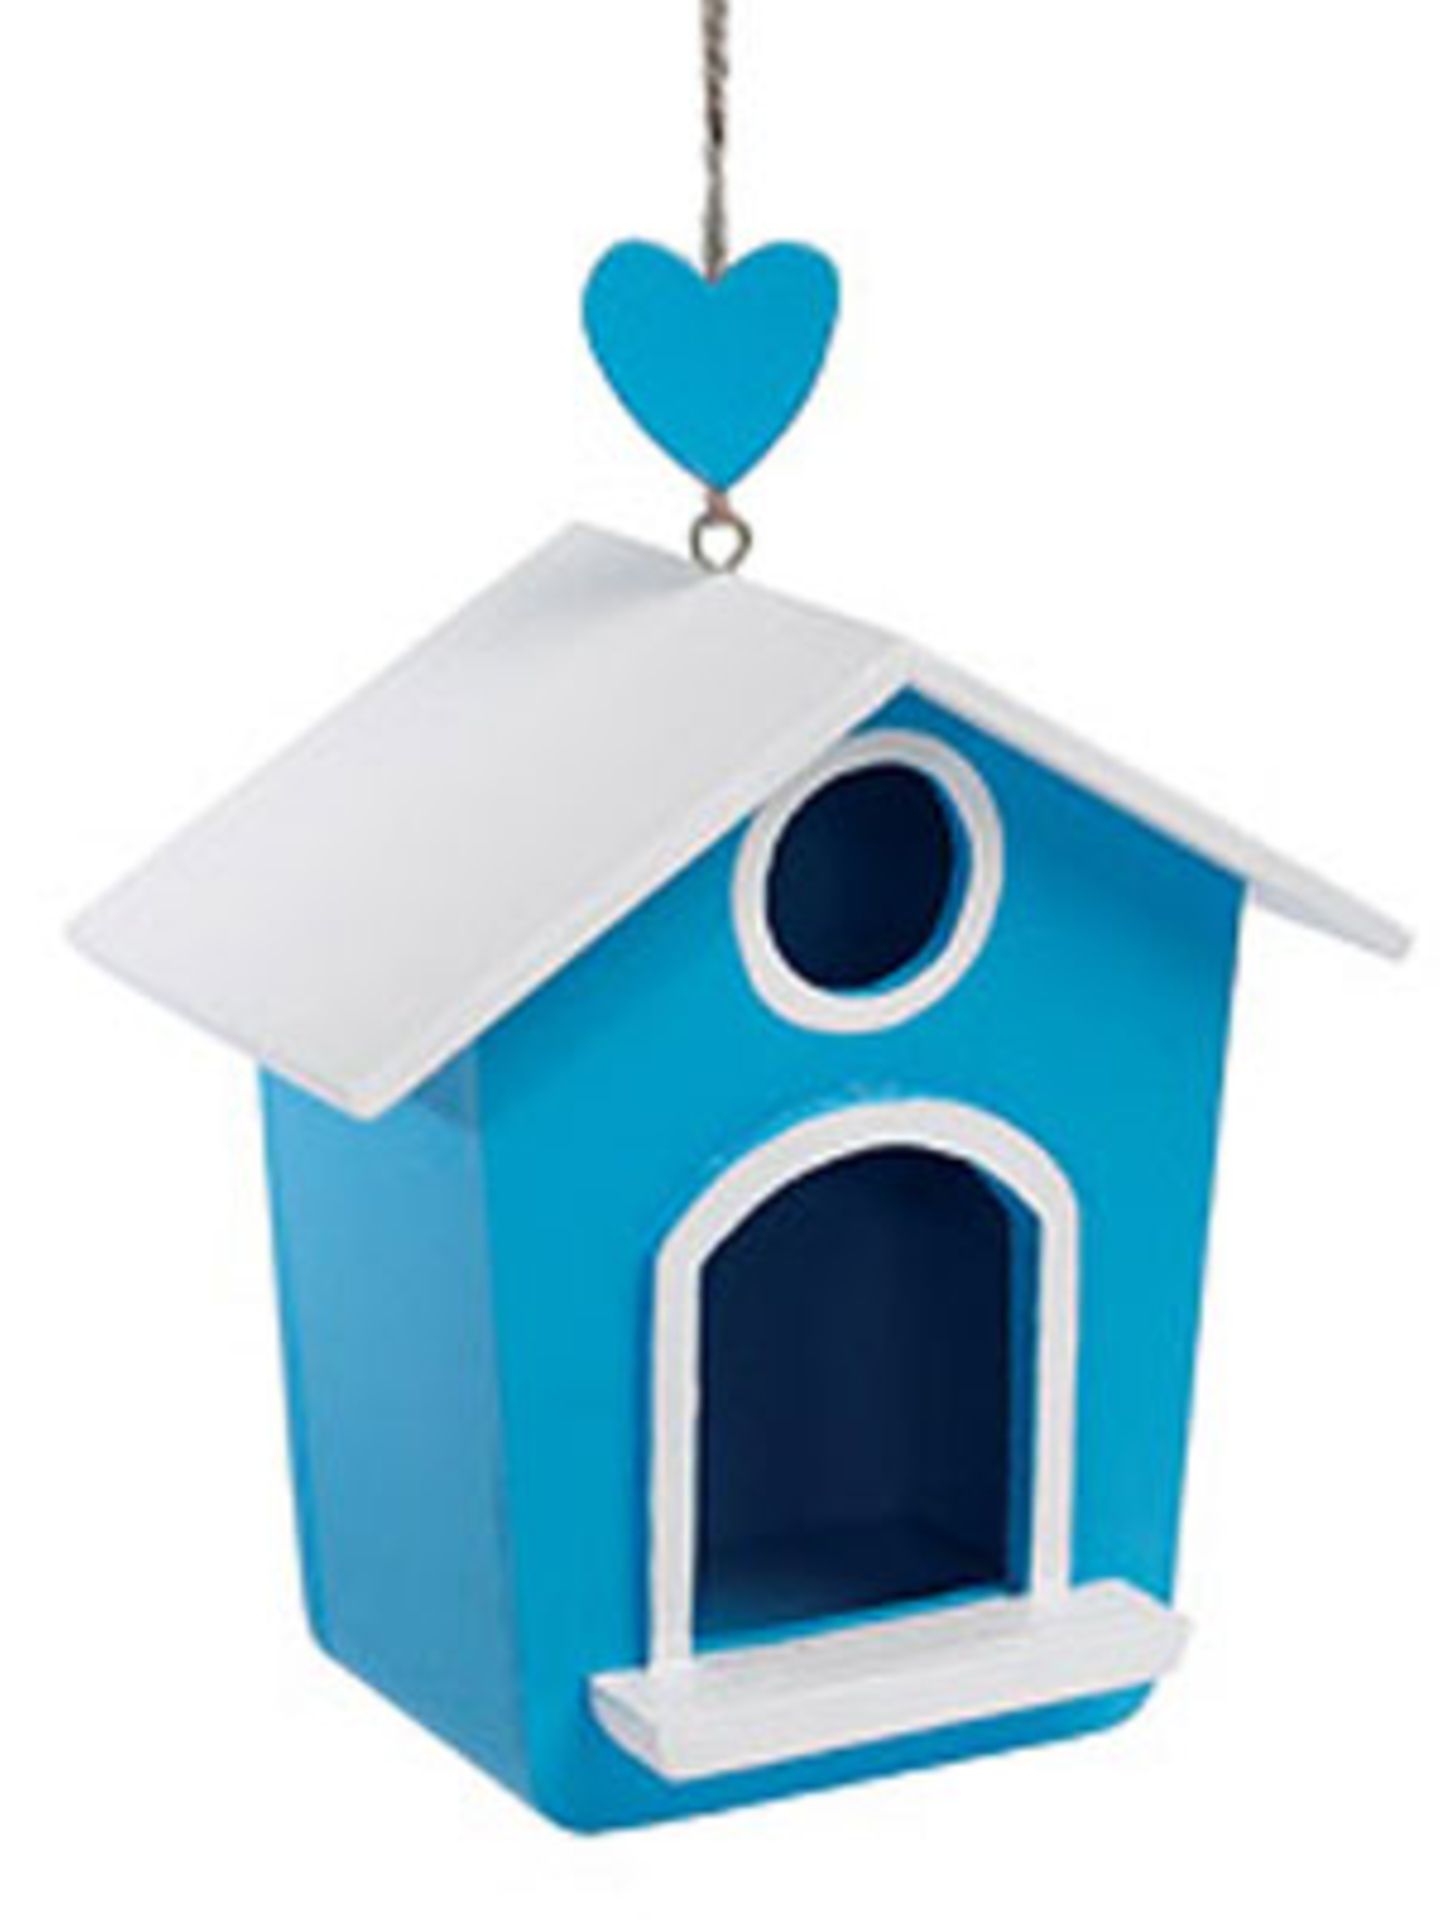 Ein schönes Zuhause für Spatzen bietet das blau-weiße Vogelhäuschen mit Herzaufhänger. Um 14 Euro bei Bertine.